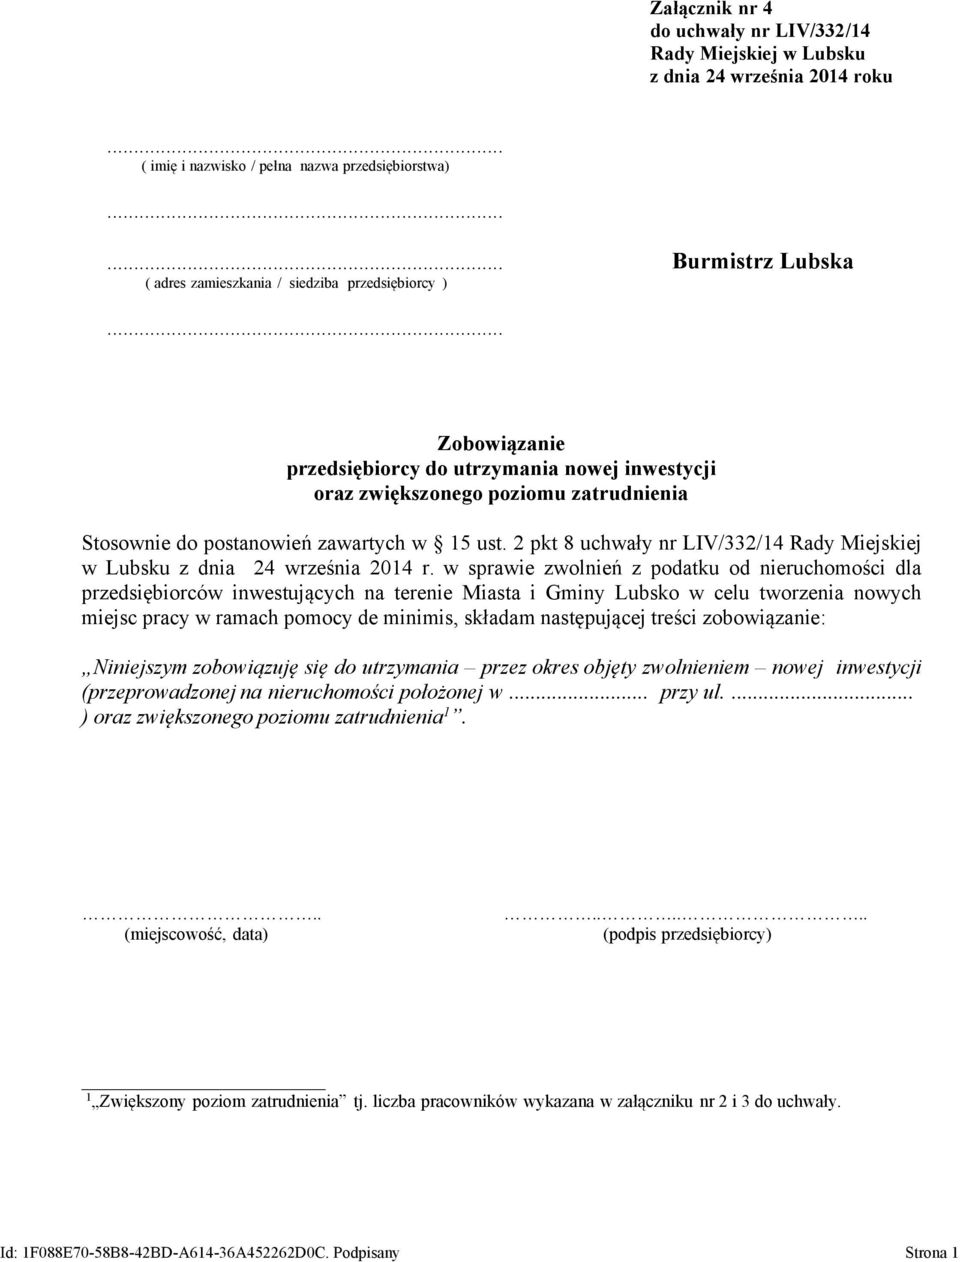 2 pkt 8 uchwały nr LIV/332/14 Rady Miejskiej w Lubsku z dnia 24 września 2014 r.